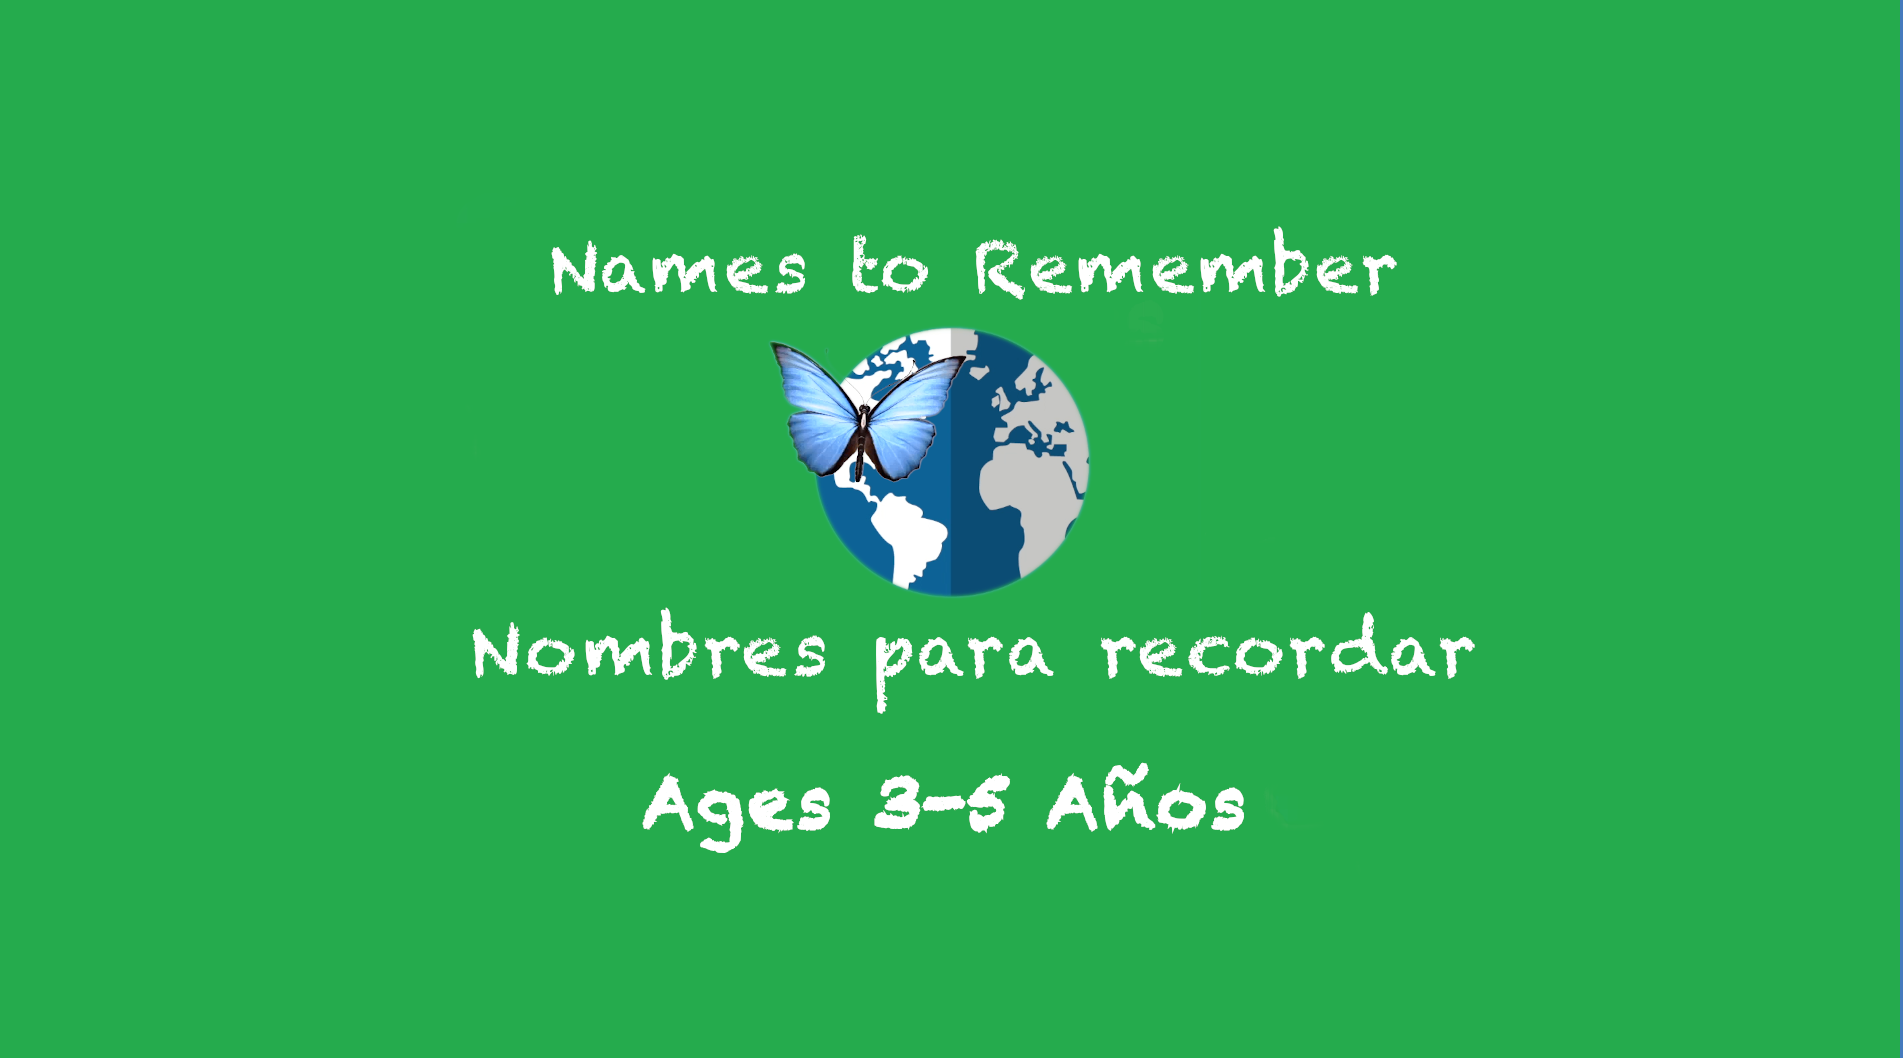 Nombres para recordar para los niños de 3 a 5 años